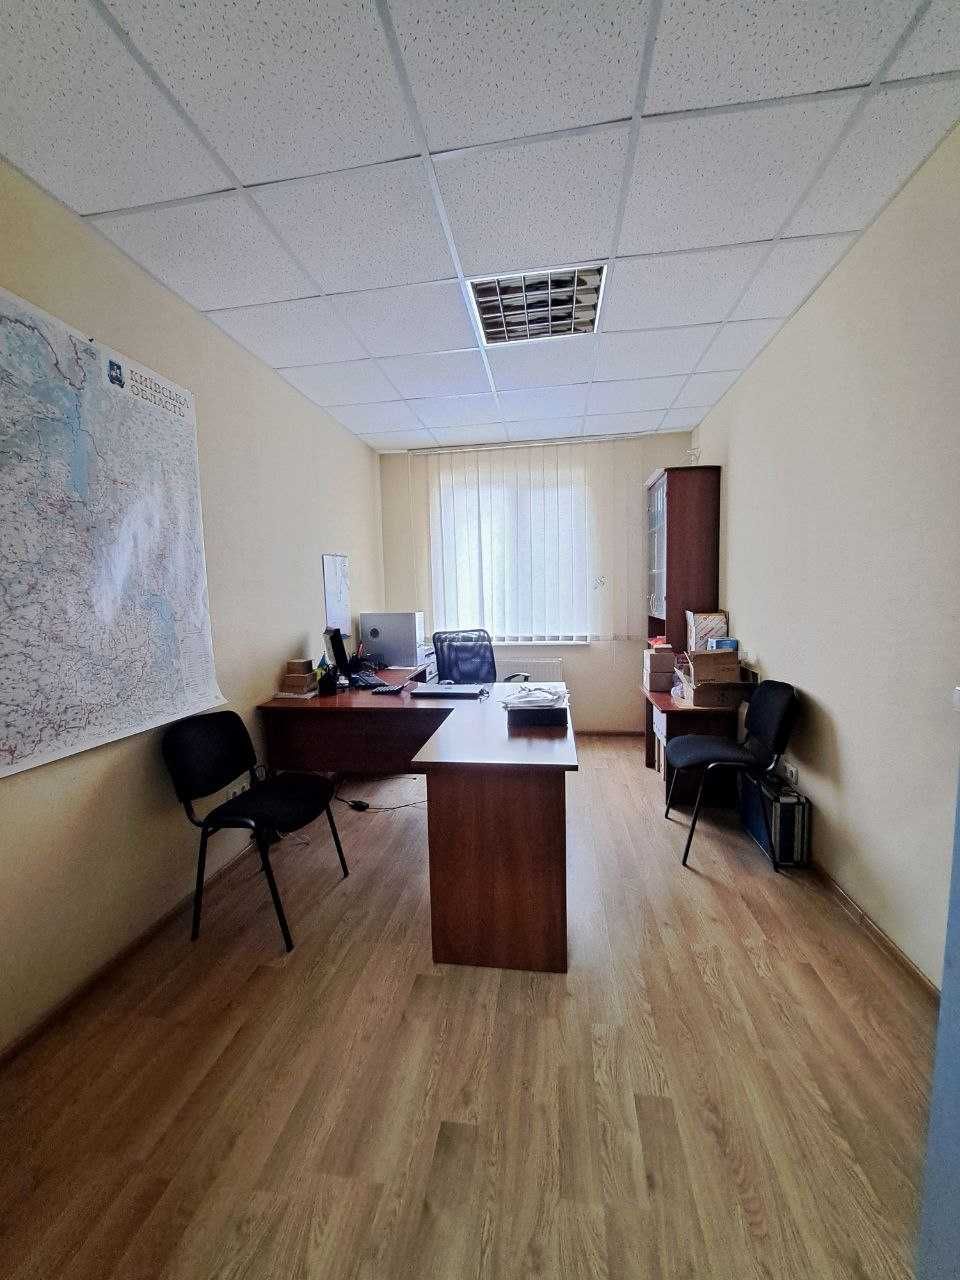 Продаж офісної будівлі 240 кв.м. Київ. Стеценко.